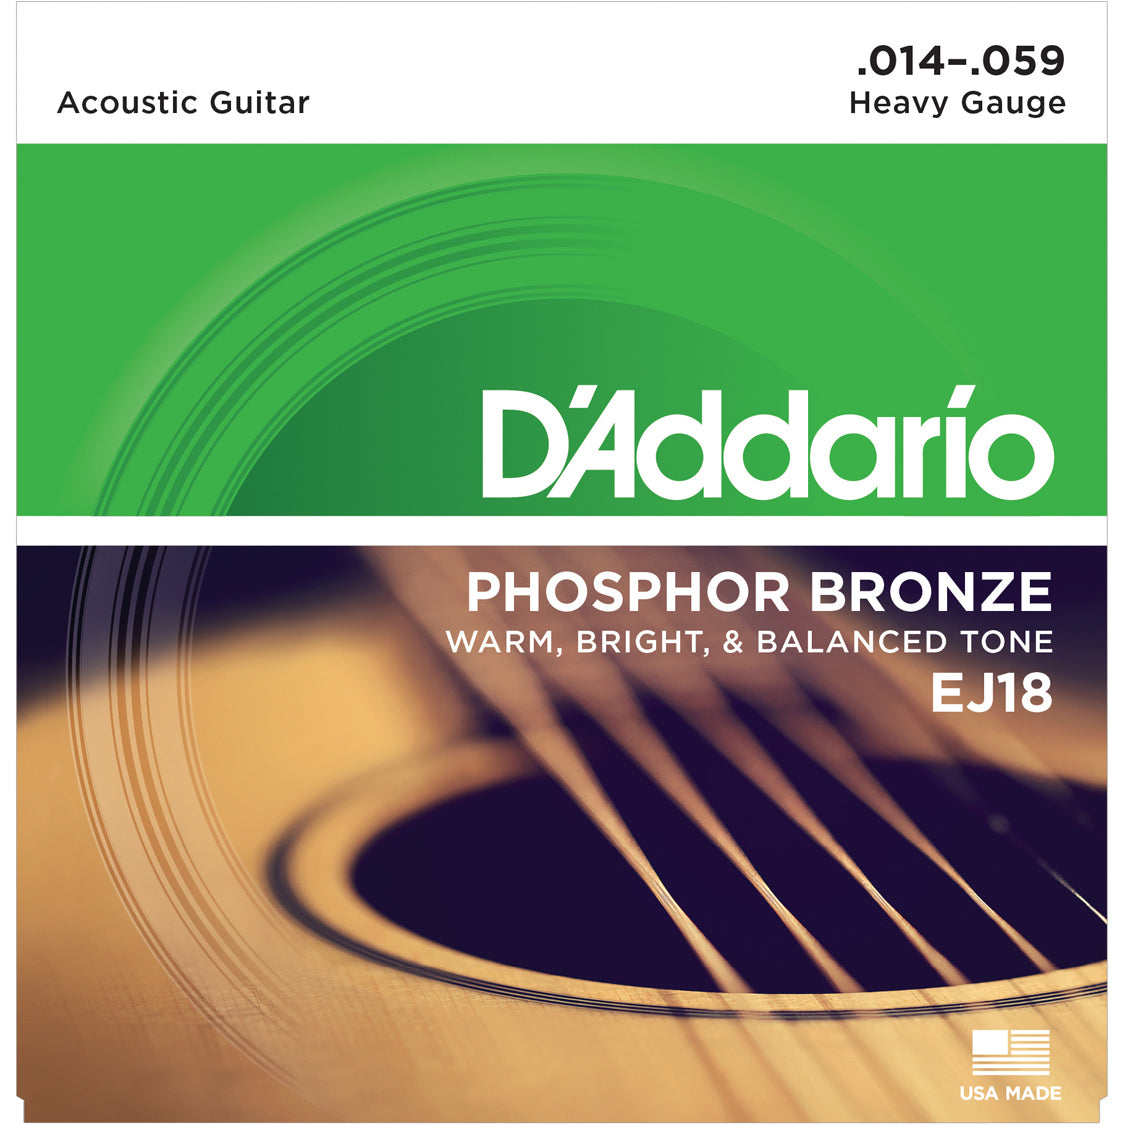 D'Addario EJ18 Phosphor Bronze Heavy 14-59